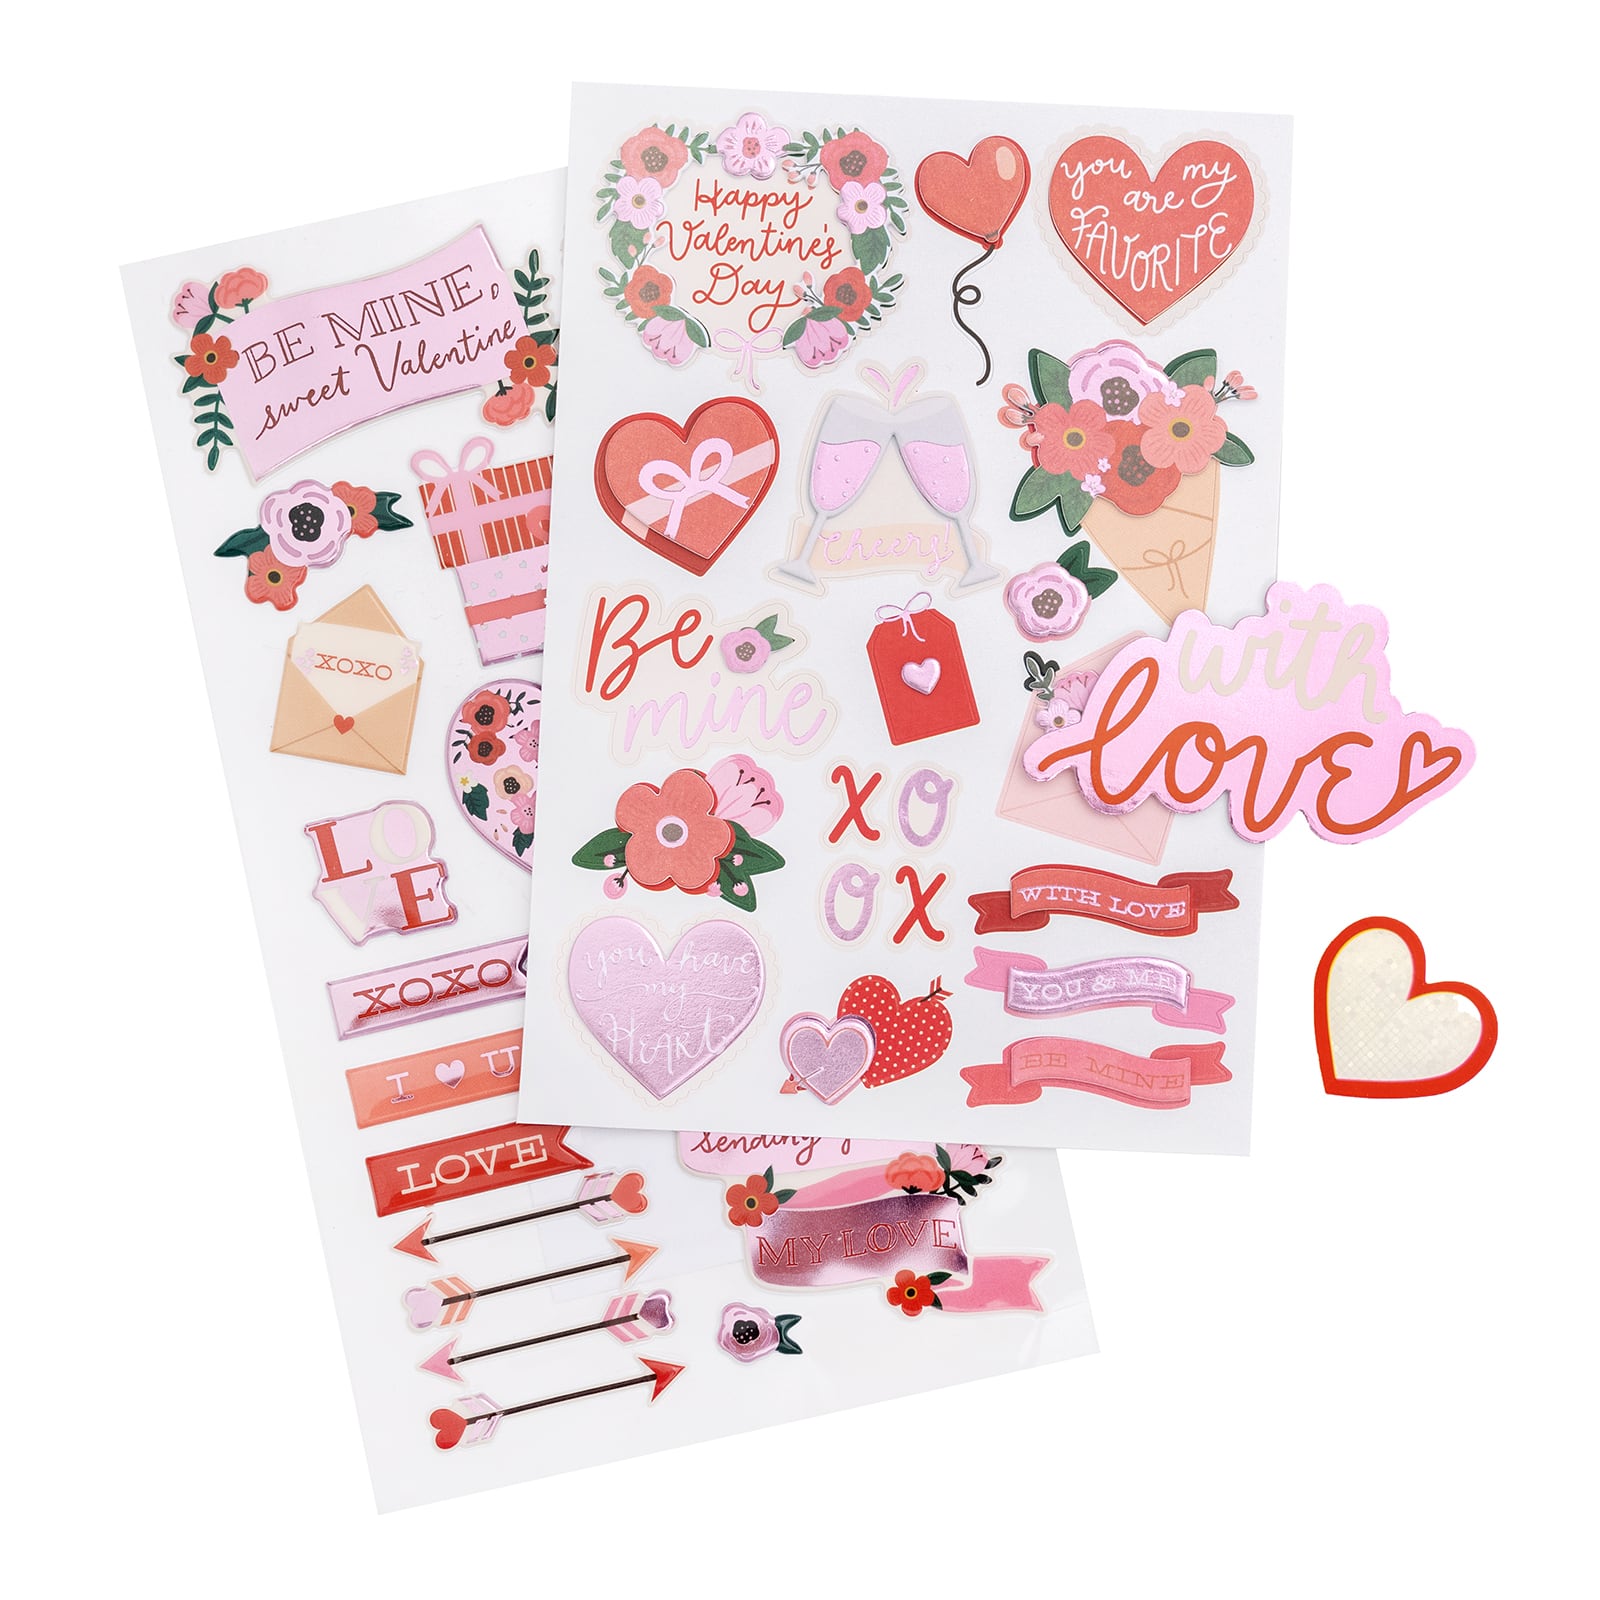 Valentine's Day sticker, school valentines stickers, valentine treat  sticker, Happy Valentine's Day, party favor label, classroom valentines